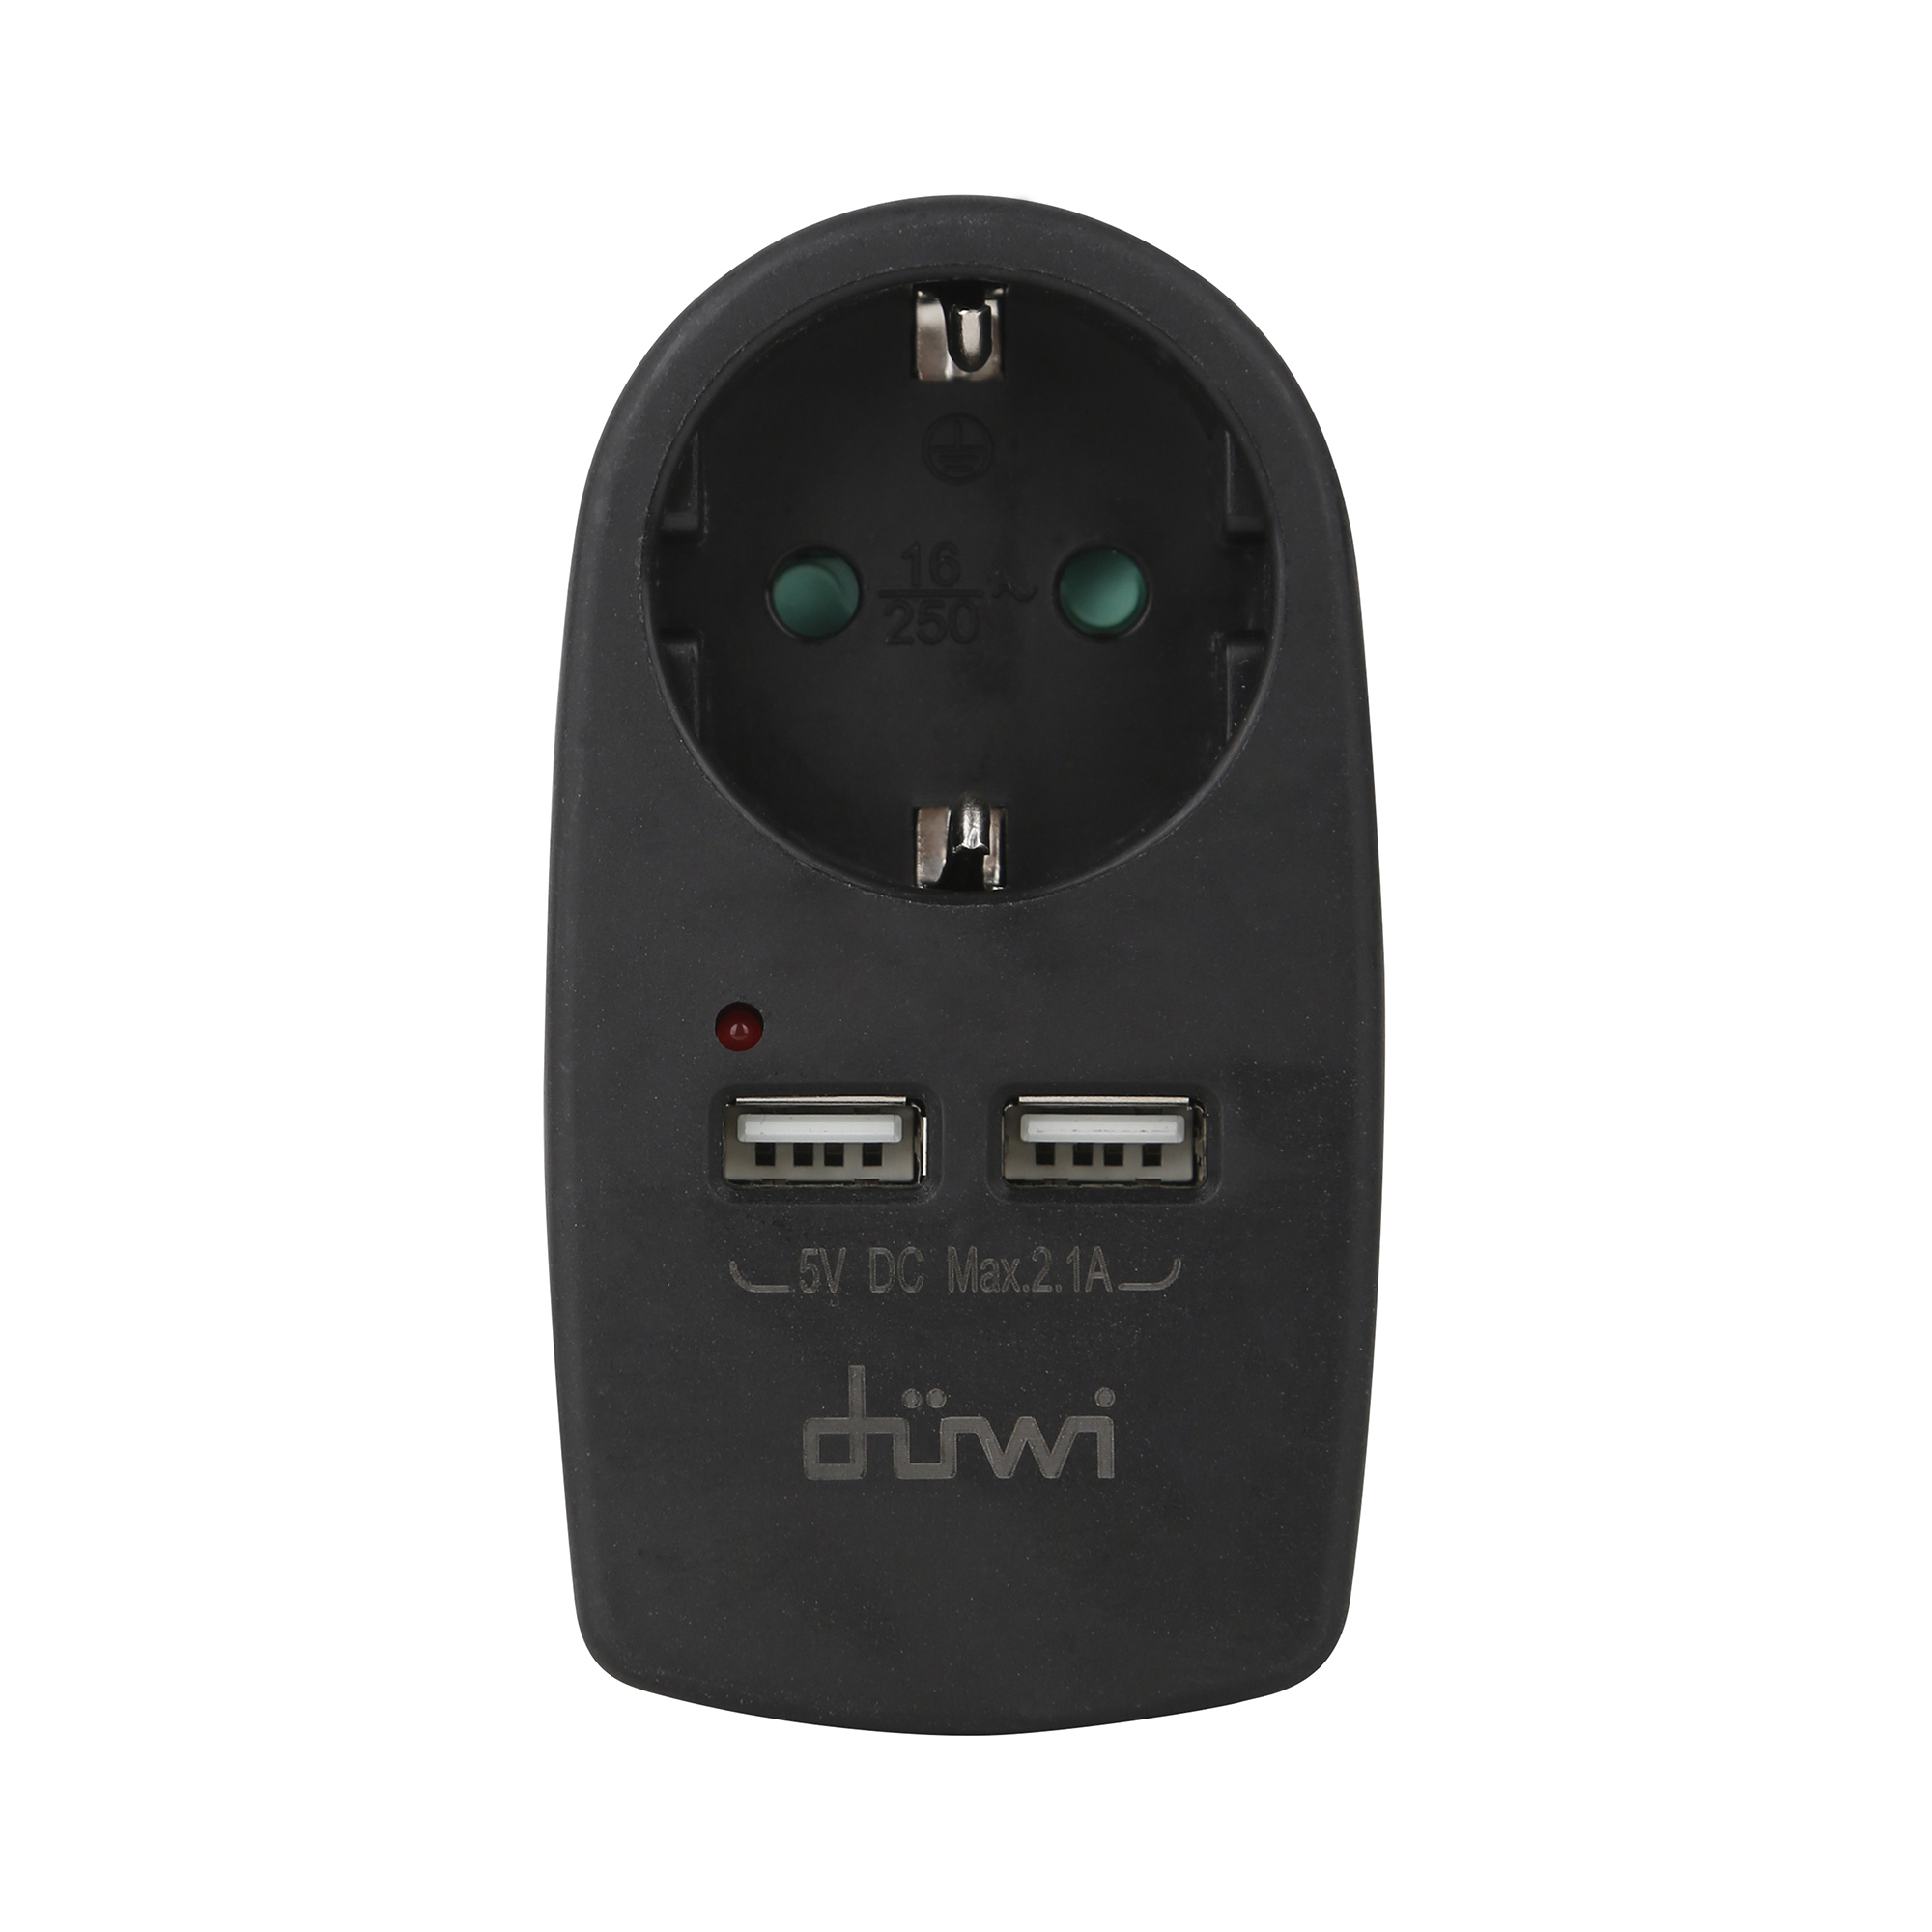 Адаптер розеточный Duwi 1 гнездо + 2 USB порта, с заземлением, черный, 16A, 3500Вт iek lsp2 024 12 20 11 драйвер led ипсн 24вт 12 в адаптер jack 5 5 мм ip20 iek eco